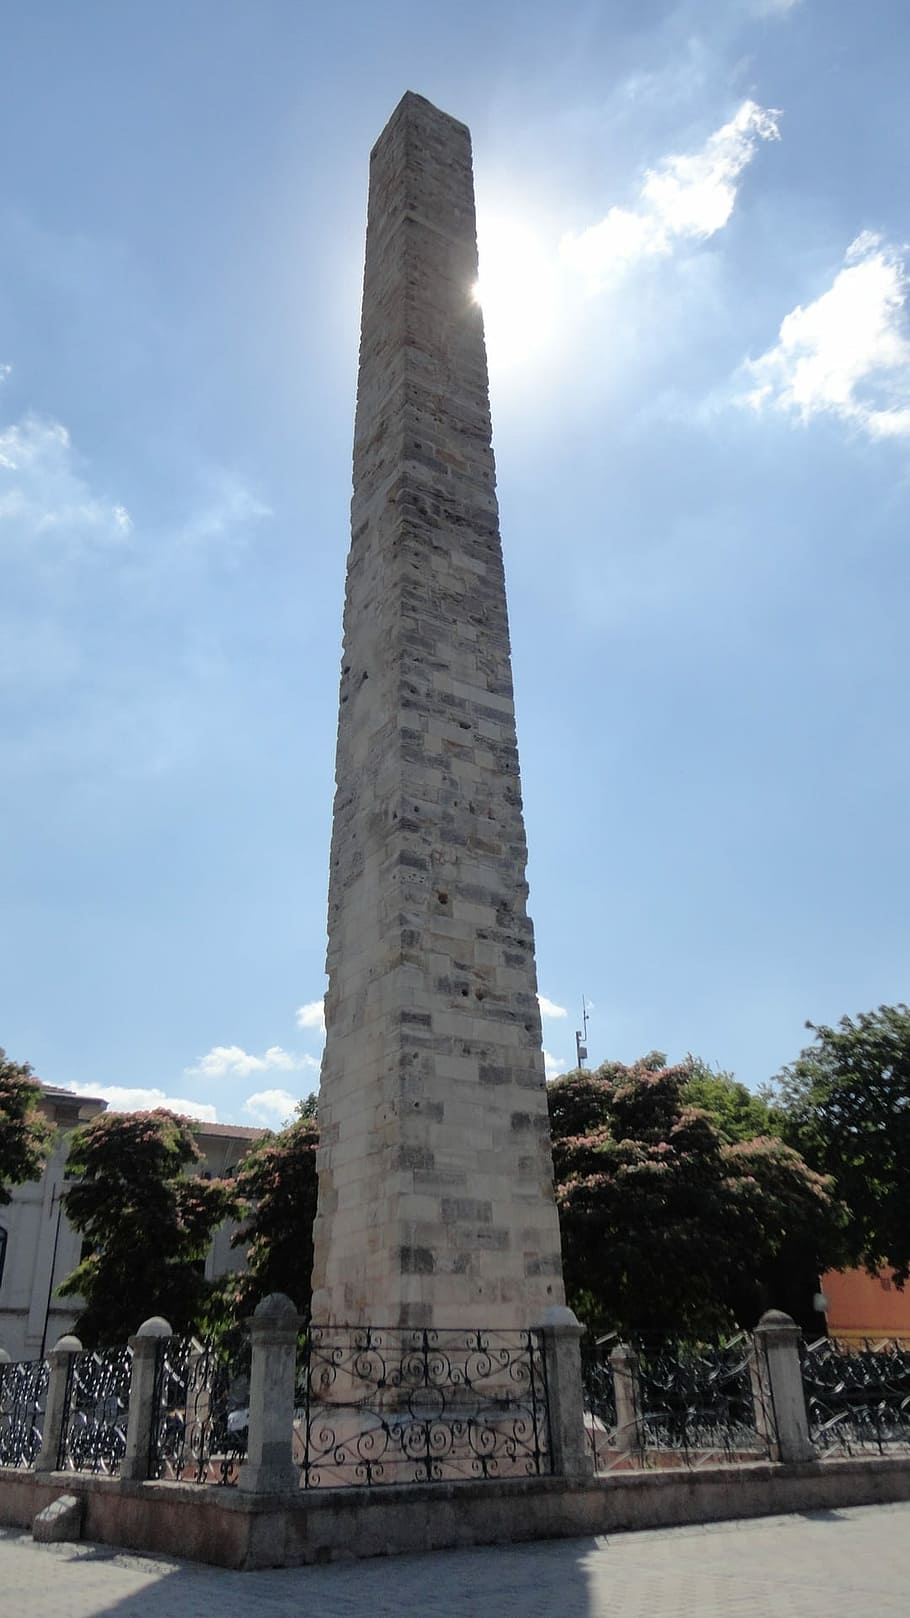 オベリスク, イスタンブール, 記念碑, コンスタンティヌスのオベリスク, トルコ, 長さ32メートル, 石, ビザンチン様式のオベリスク, 建築, 背の高い-歴史